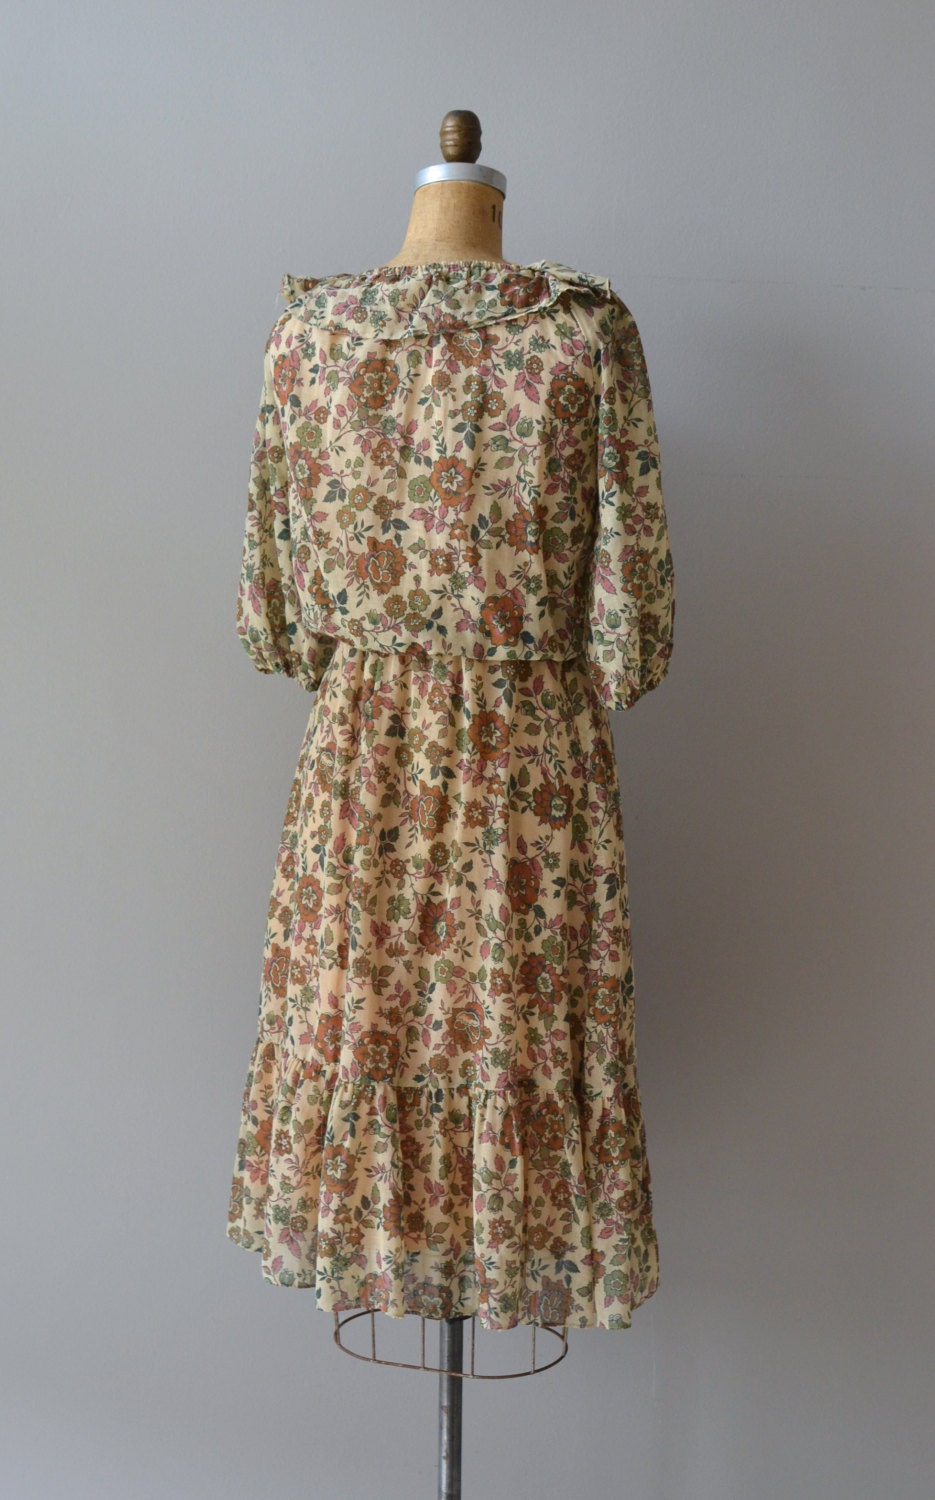 Wooded Lane dress / vintage 70s dress / 1970s floral print